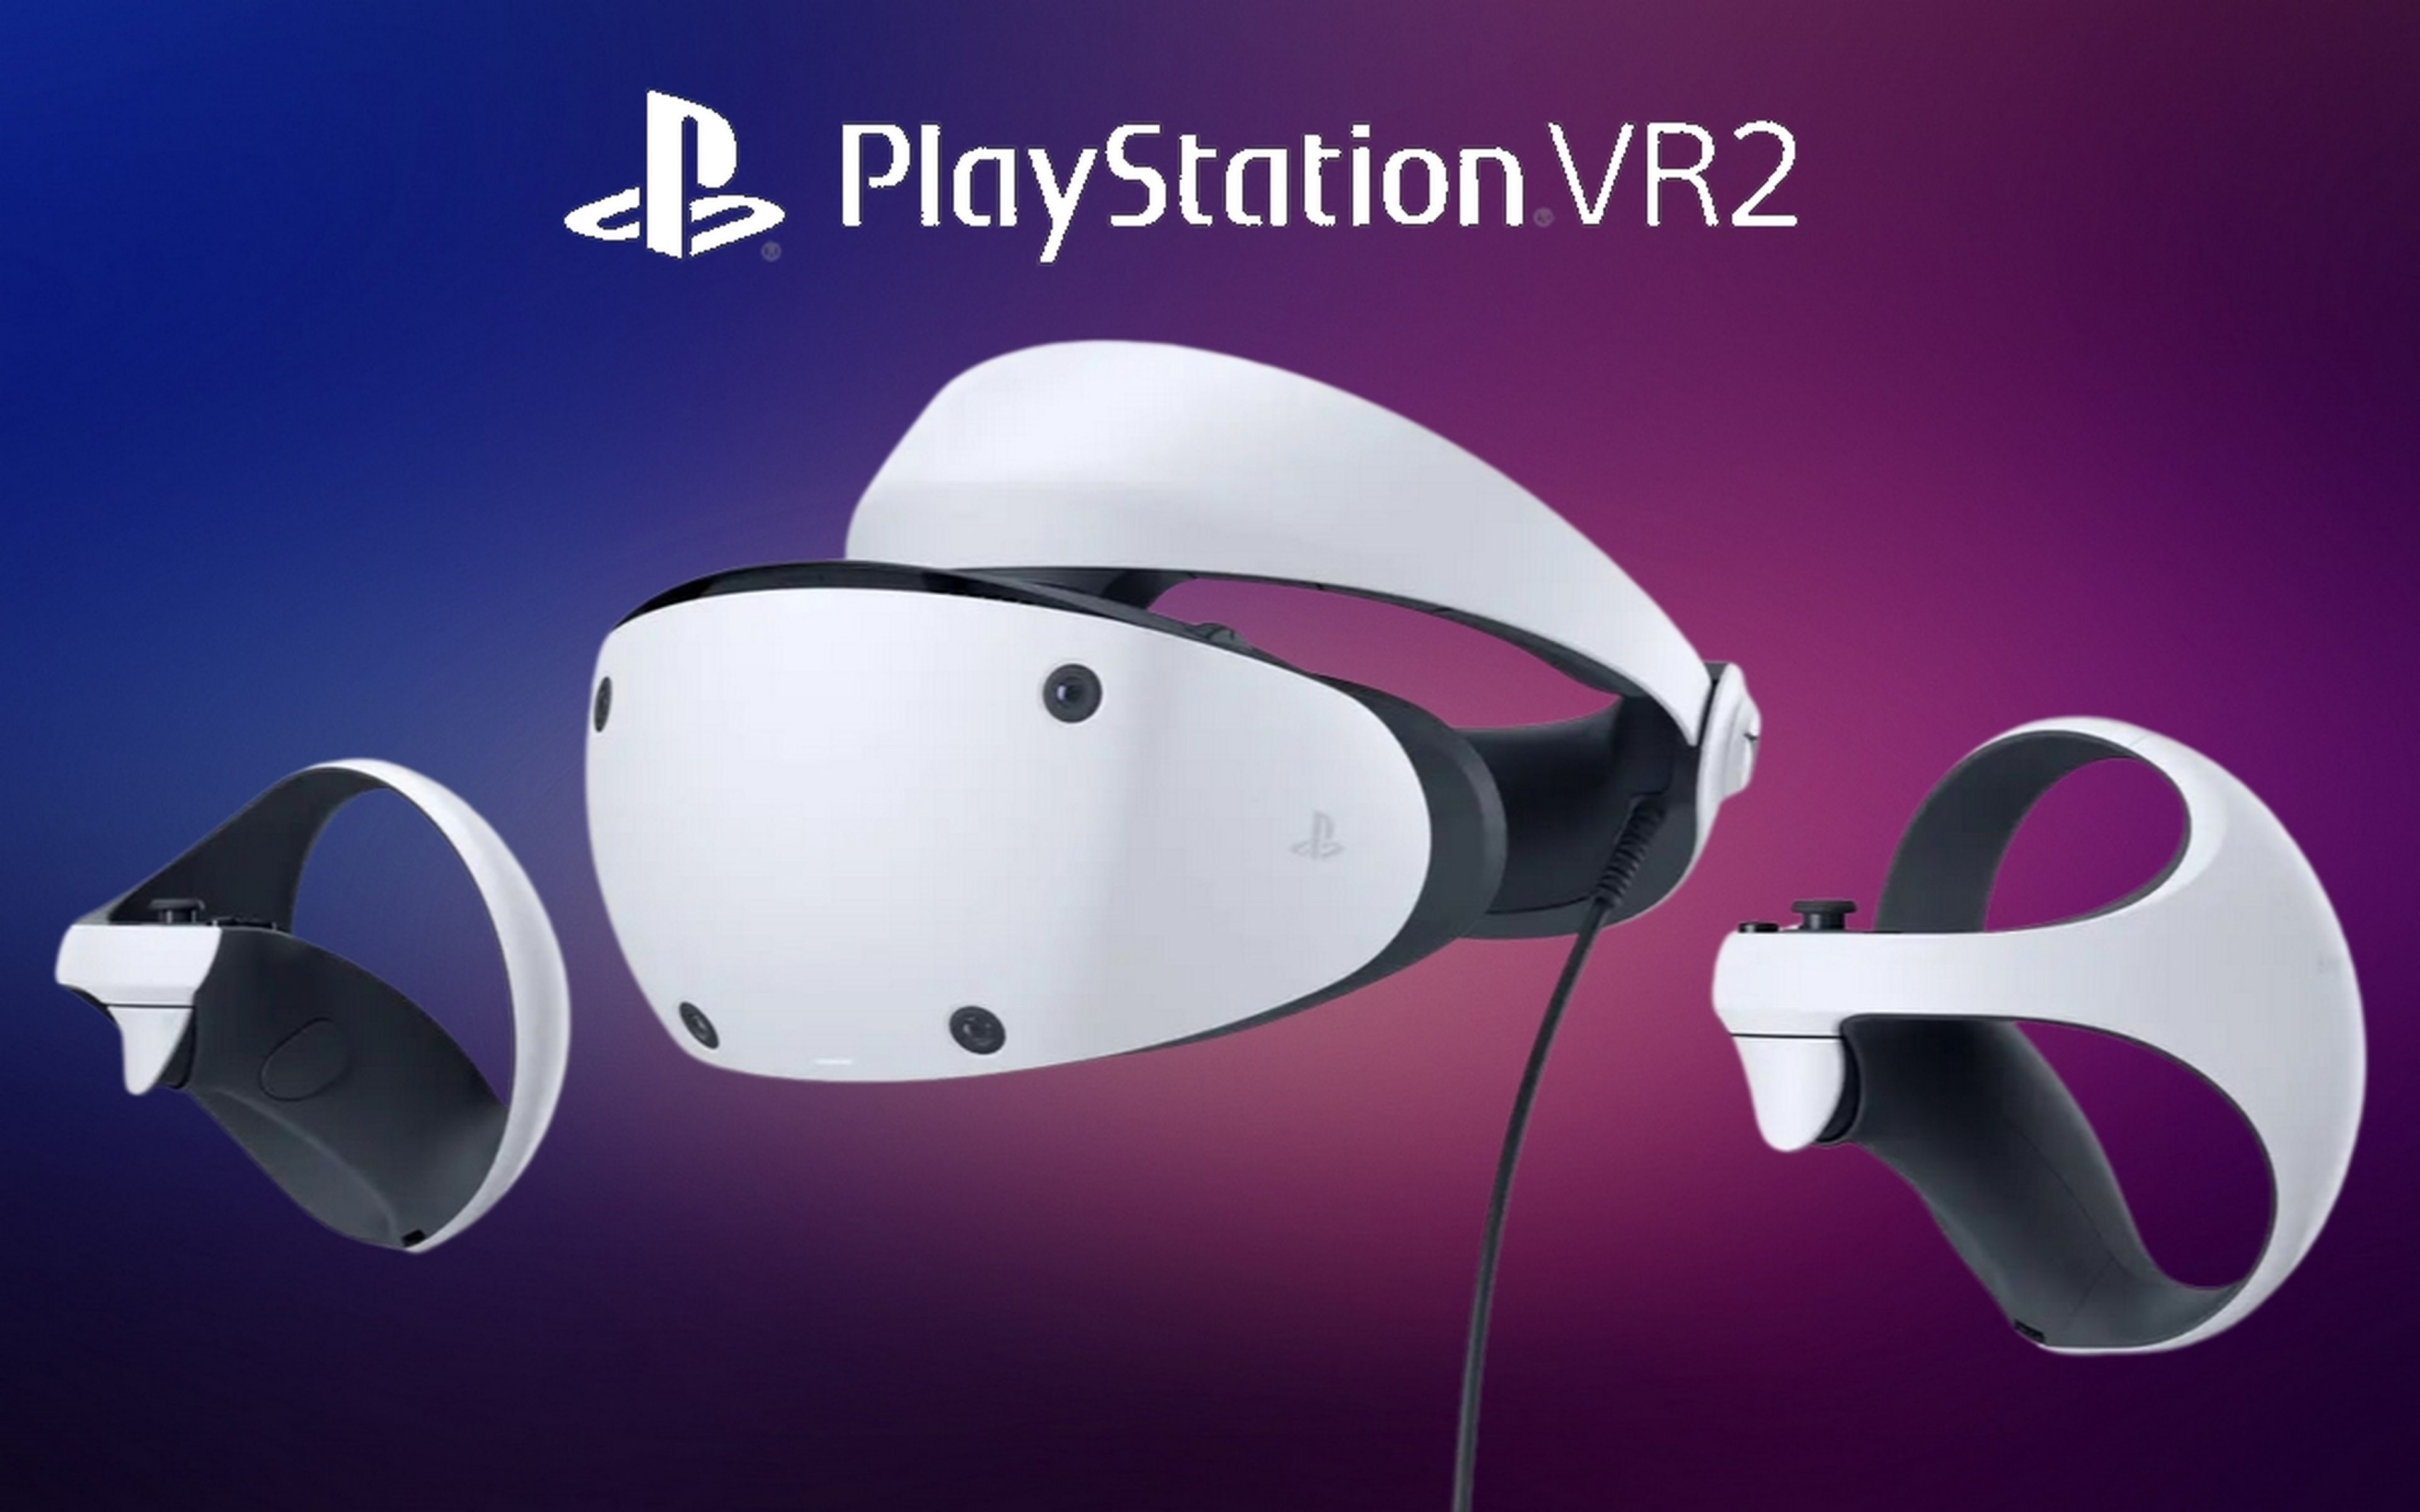 Sony desvelas el aspecto y el nombre de sus nuevas gafas de realidad virtual PlayStation VR2, y son revolucionarias